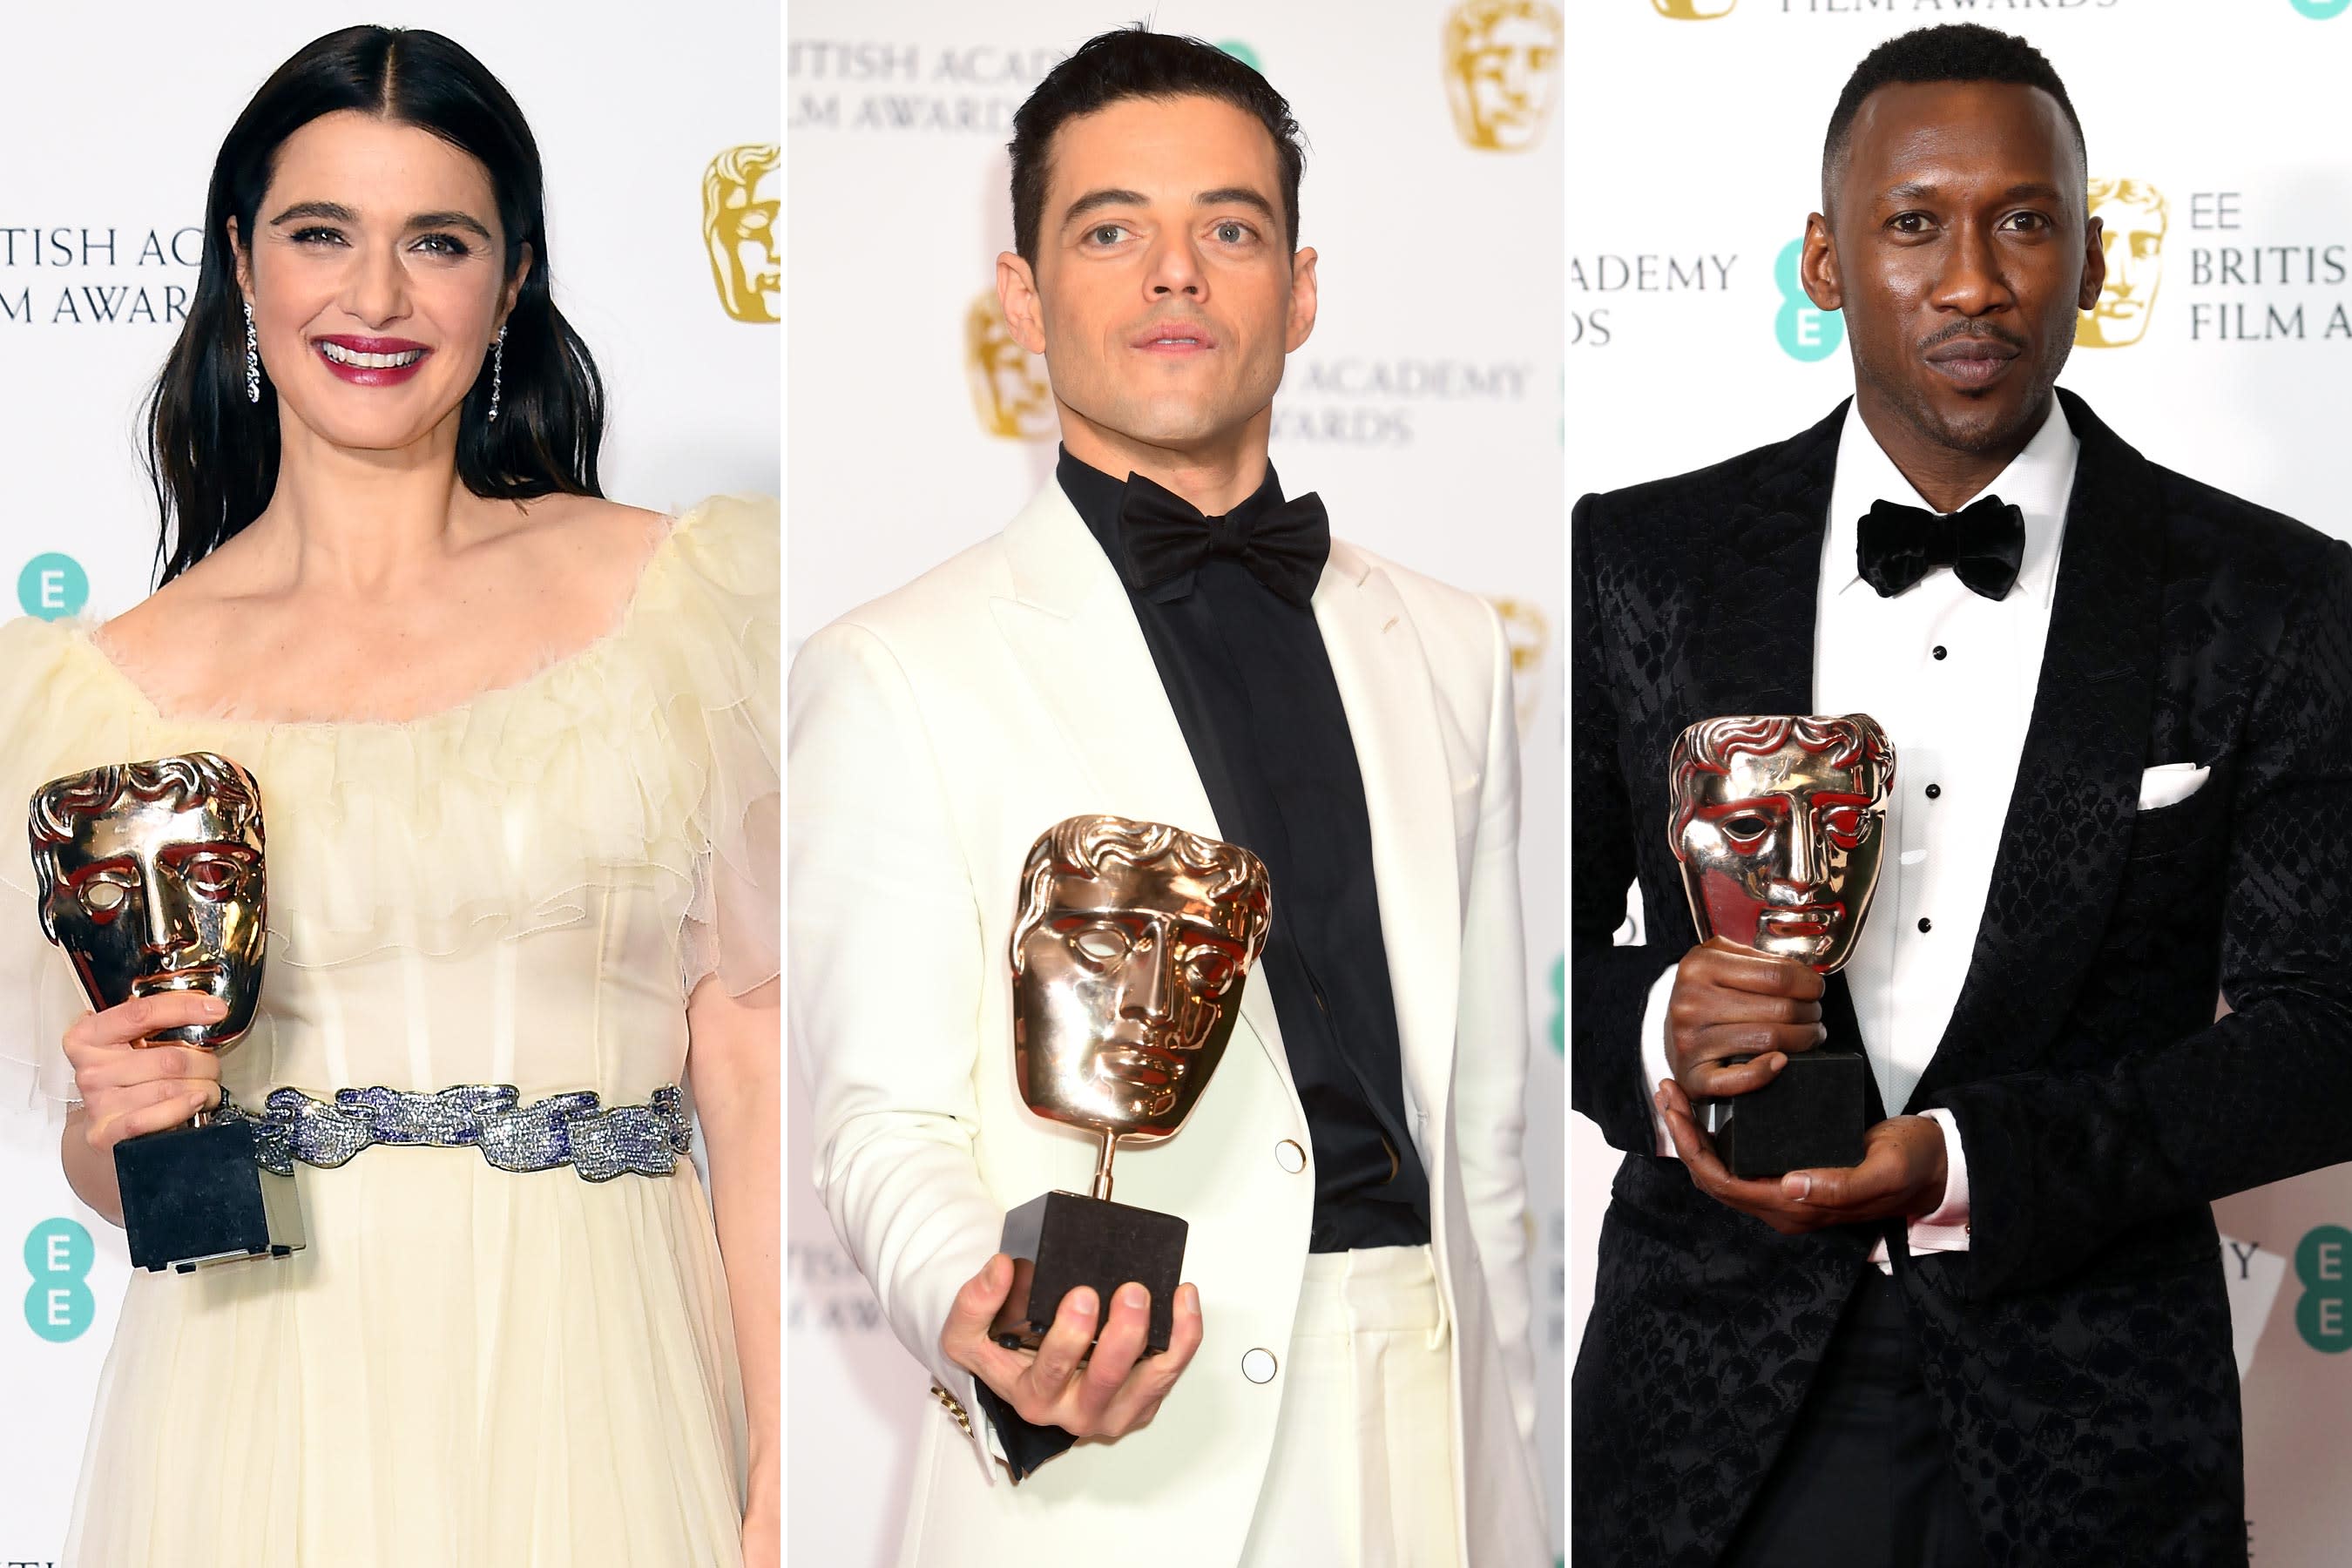 BAFTA Awards 2019 See the complete winners list